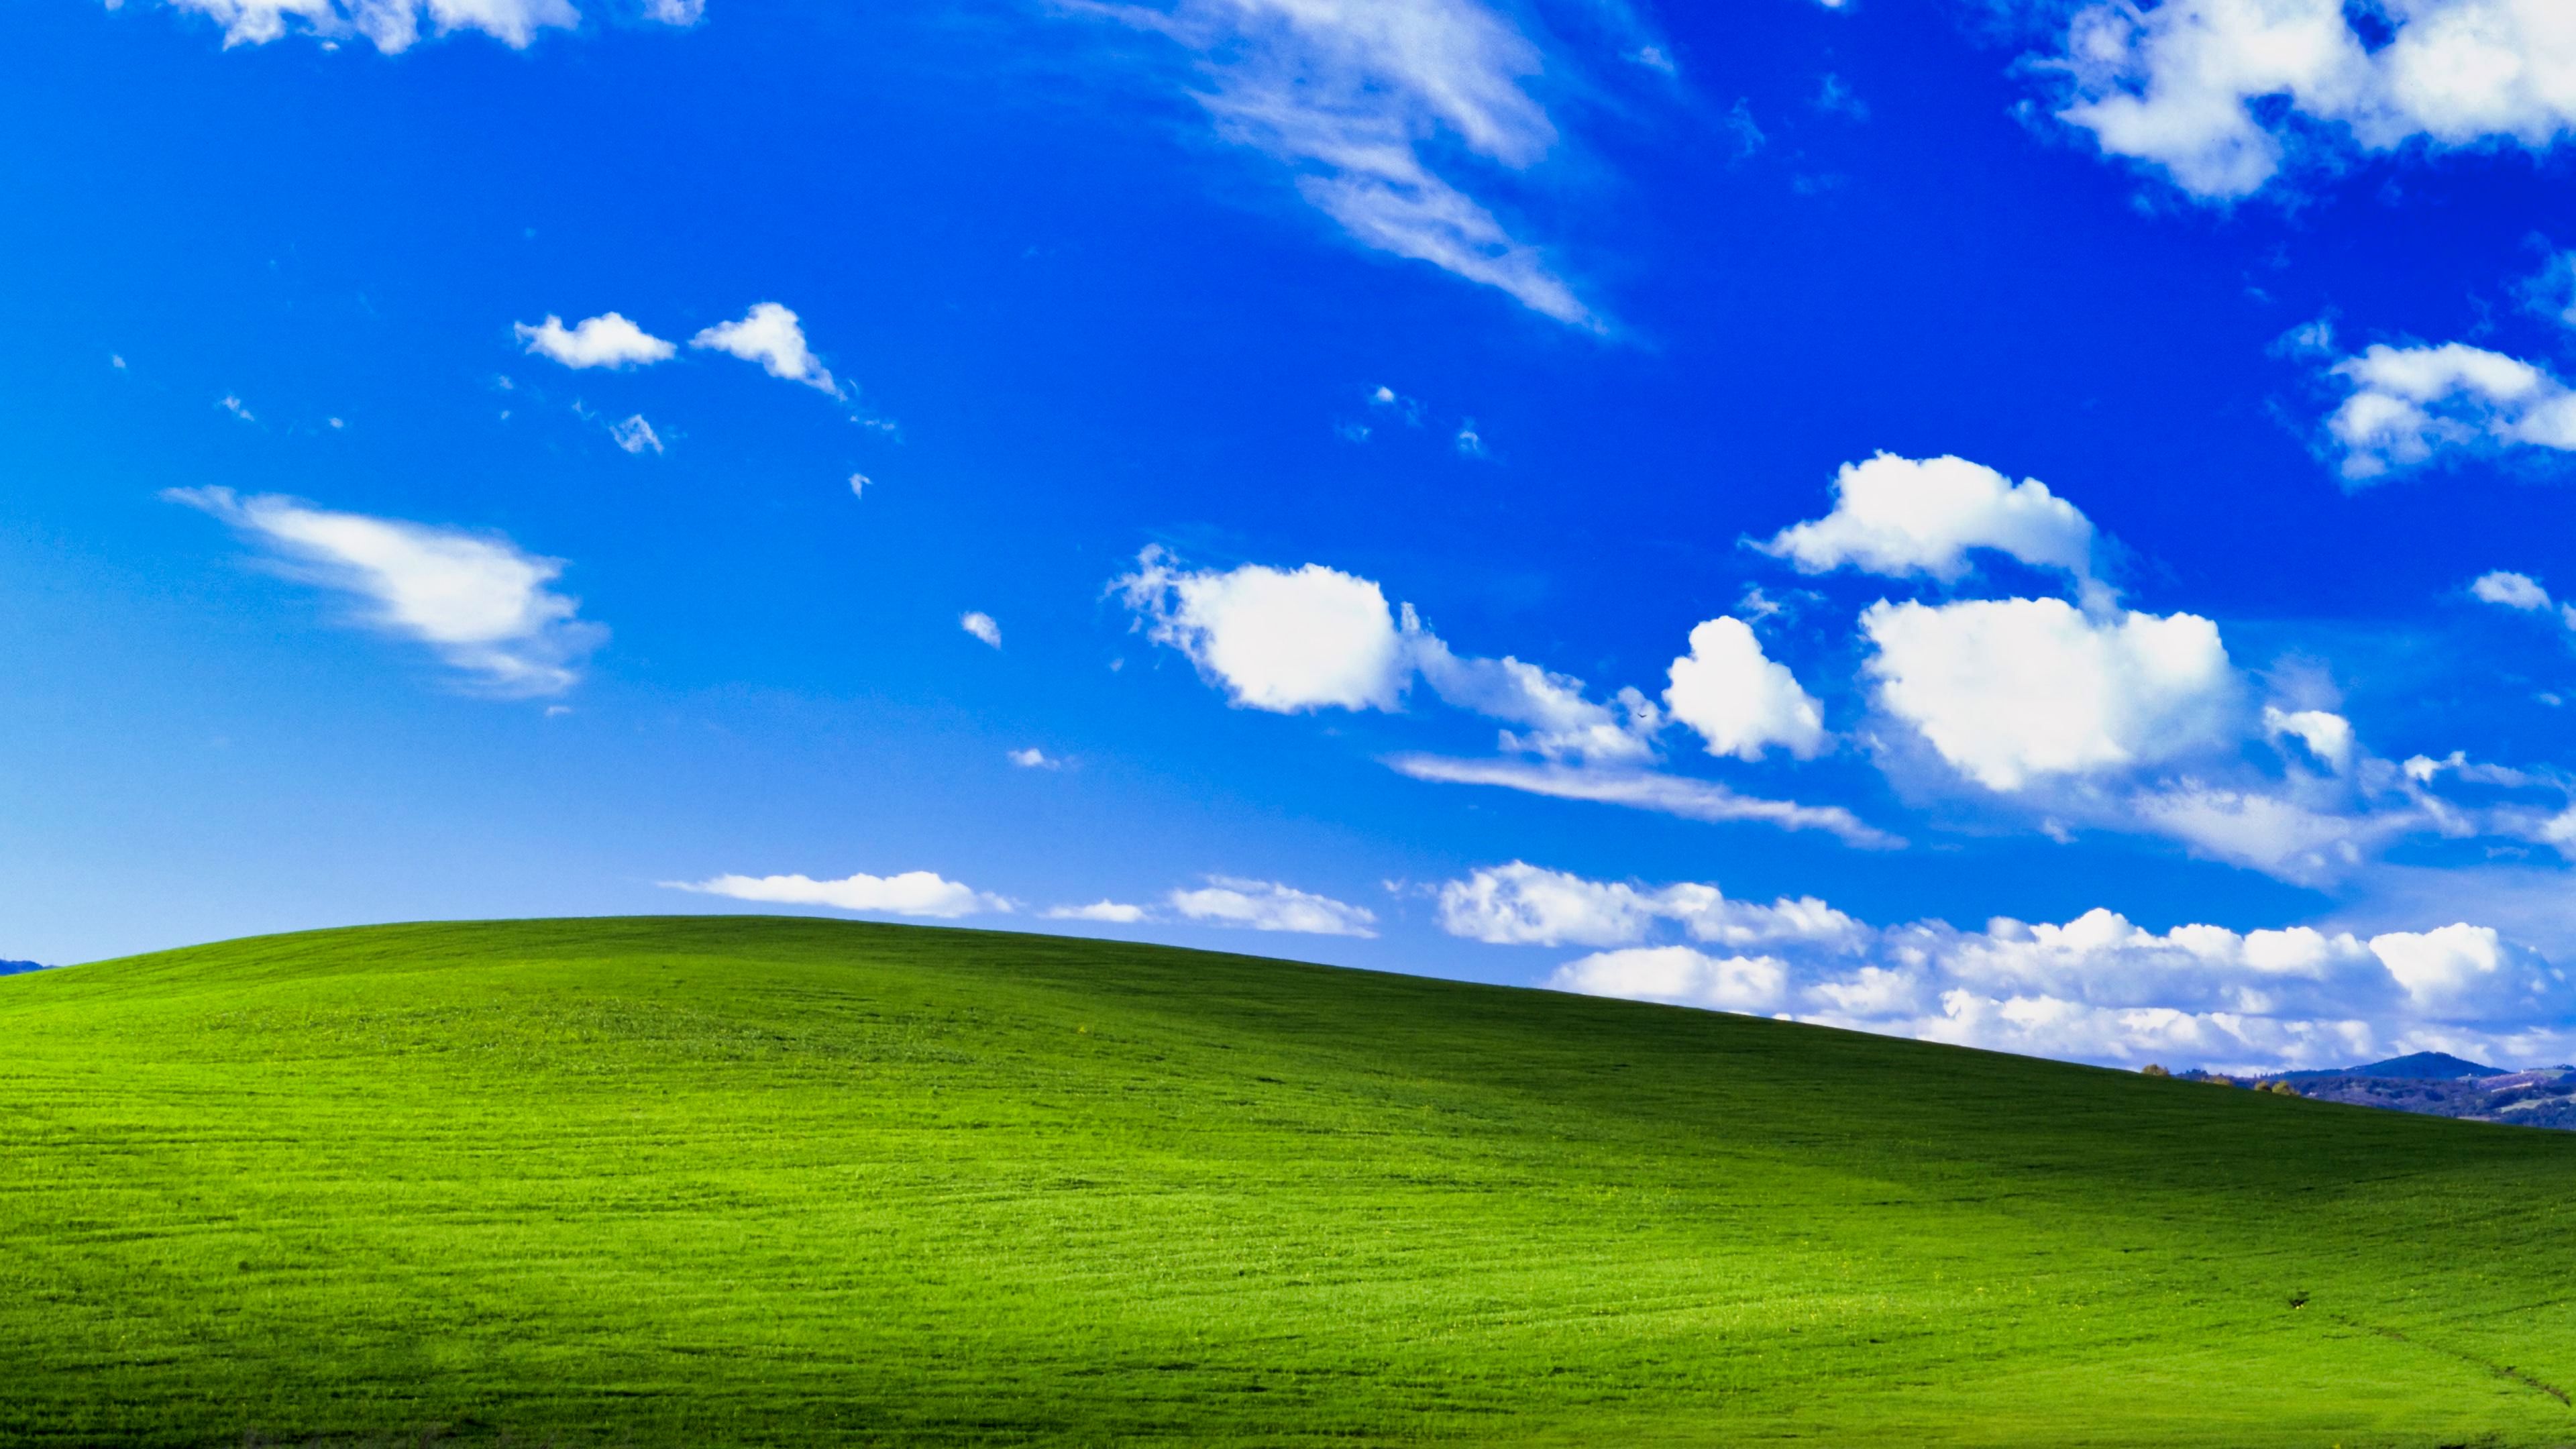 Bạn muốn một bức hình nền Windows XP hoàn hảo với độ phân giải cao? Bạn muốn tìm kiếm một trang web chất lượng để tải xuống hình nền Windows XP đẹp nhất? Hãy đến với WallpaperDog, trang web chuyên cung cấp hình nền đẹp và chất lượng nhất, sẽ là nơi lí tưởng cho bạn. Nhanh tay truy cập và tải xuống để sử dụng hình nền Windows XP độc đáo của mình nhé!